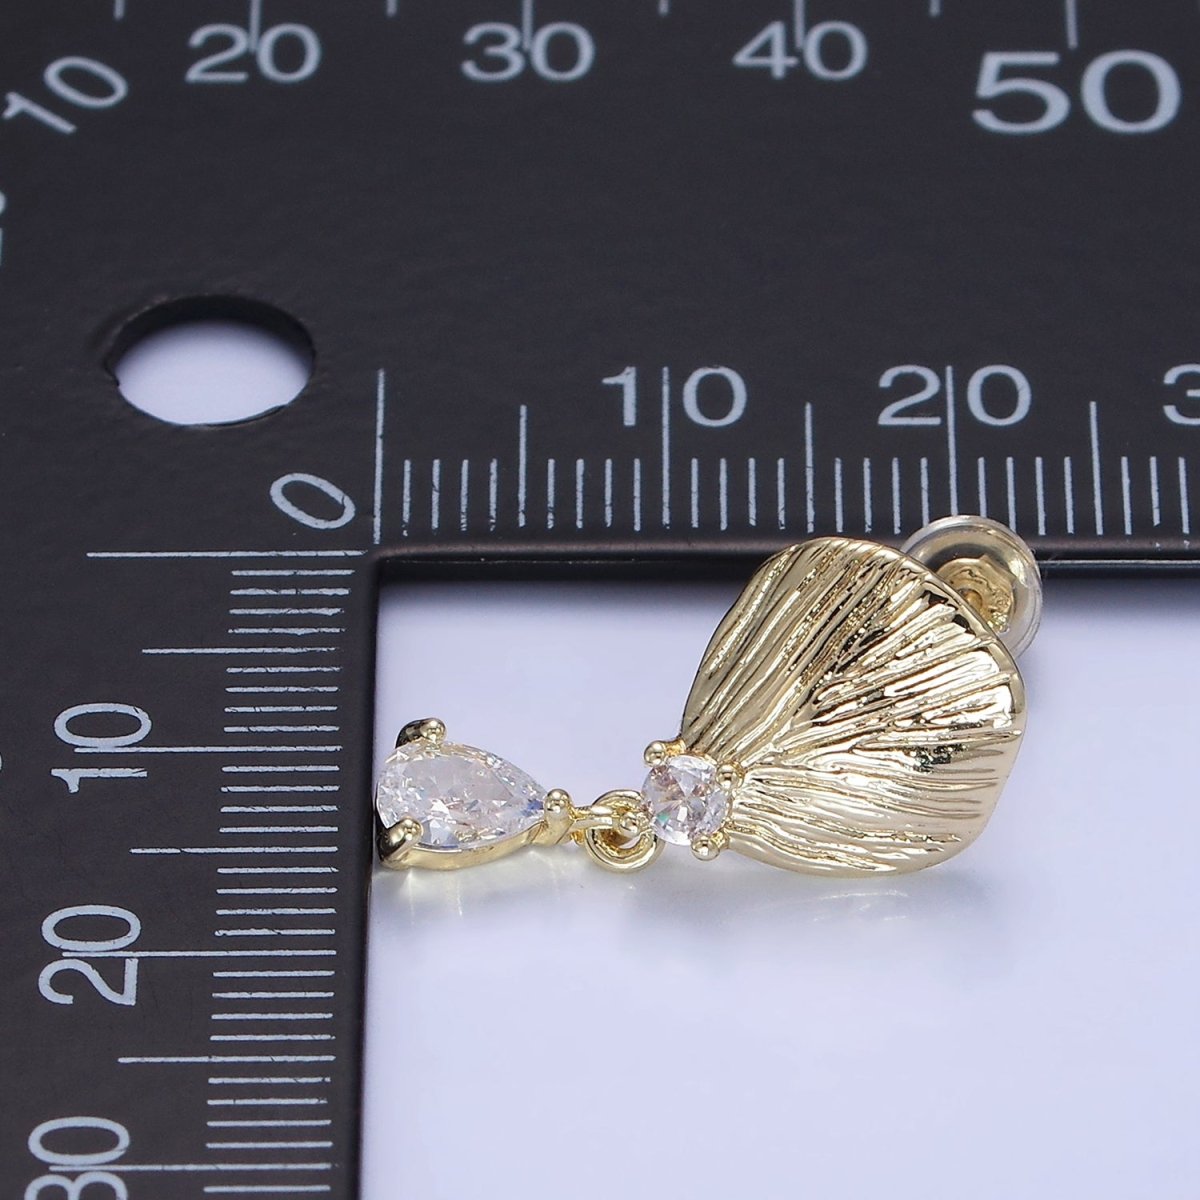 14K Gold Filled Teardrop CZ Clam Shell Drop Stud Earrings | P483 - DLUXCA